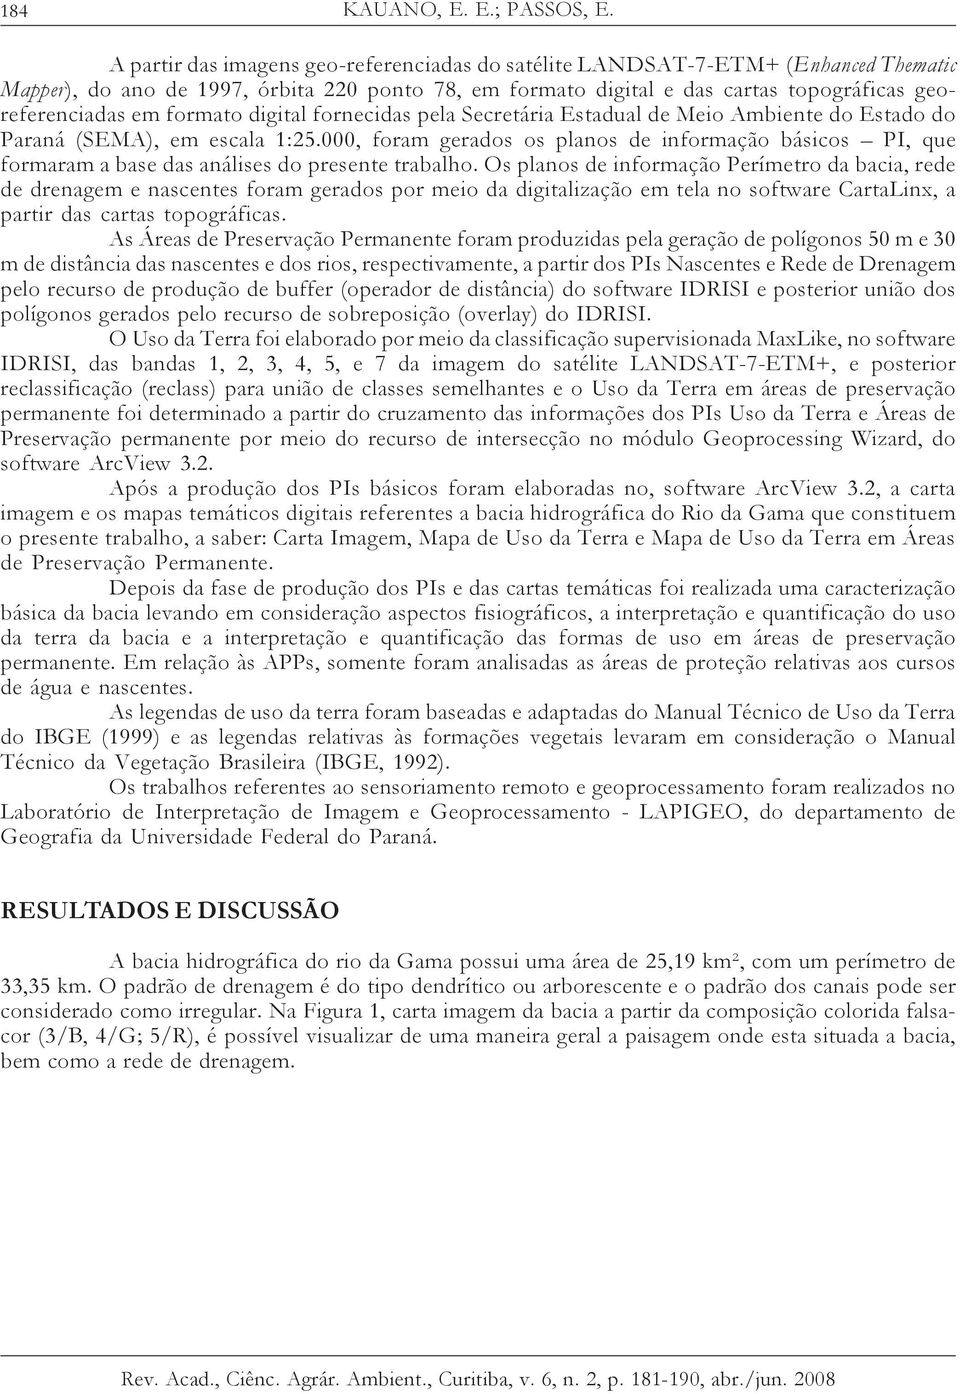 formato digital fornecidas pela Secretária Estadual de Meio Ambiente do Estado do Paraná (SEMA), em escala 1:25.